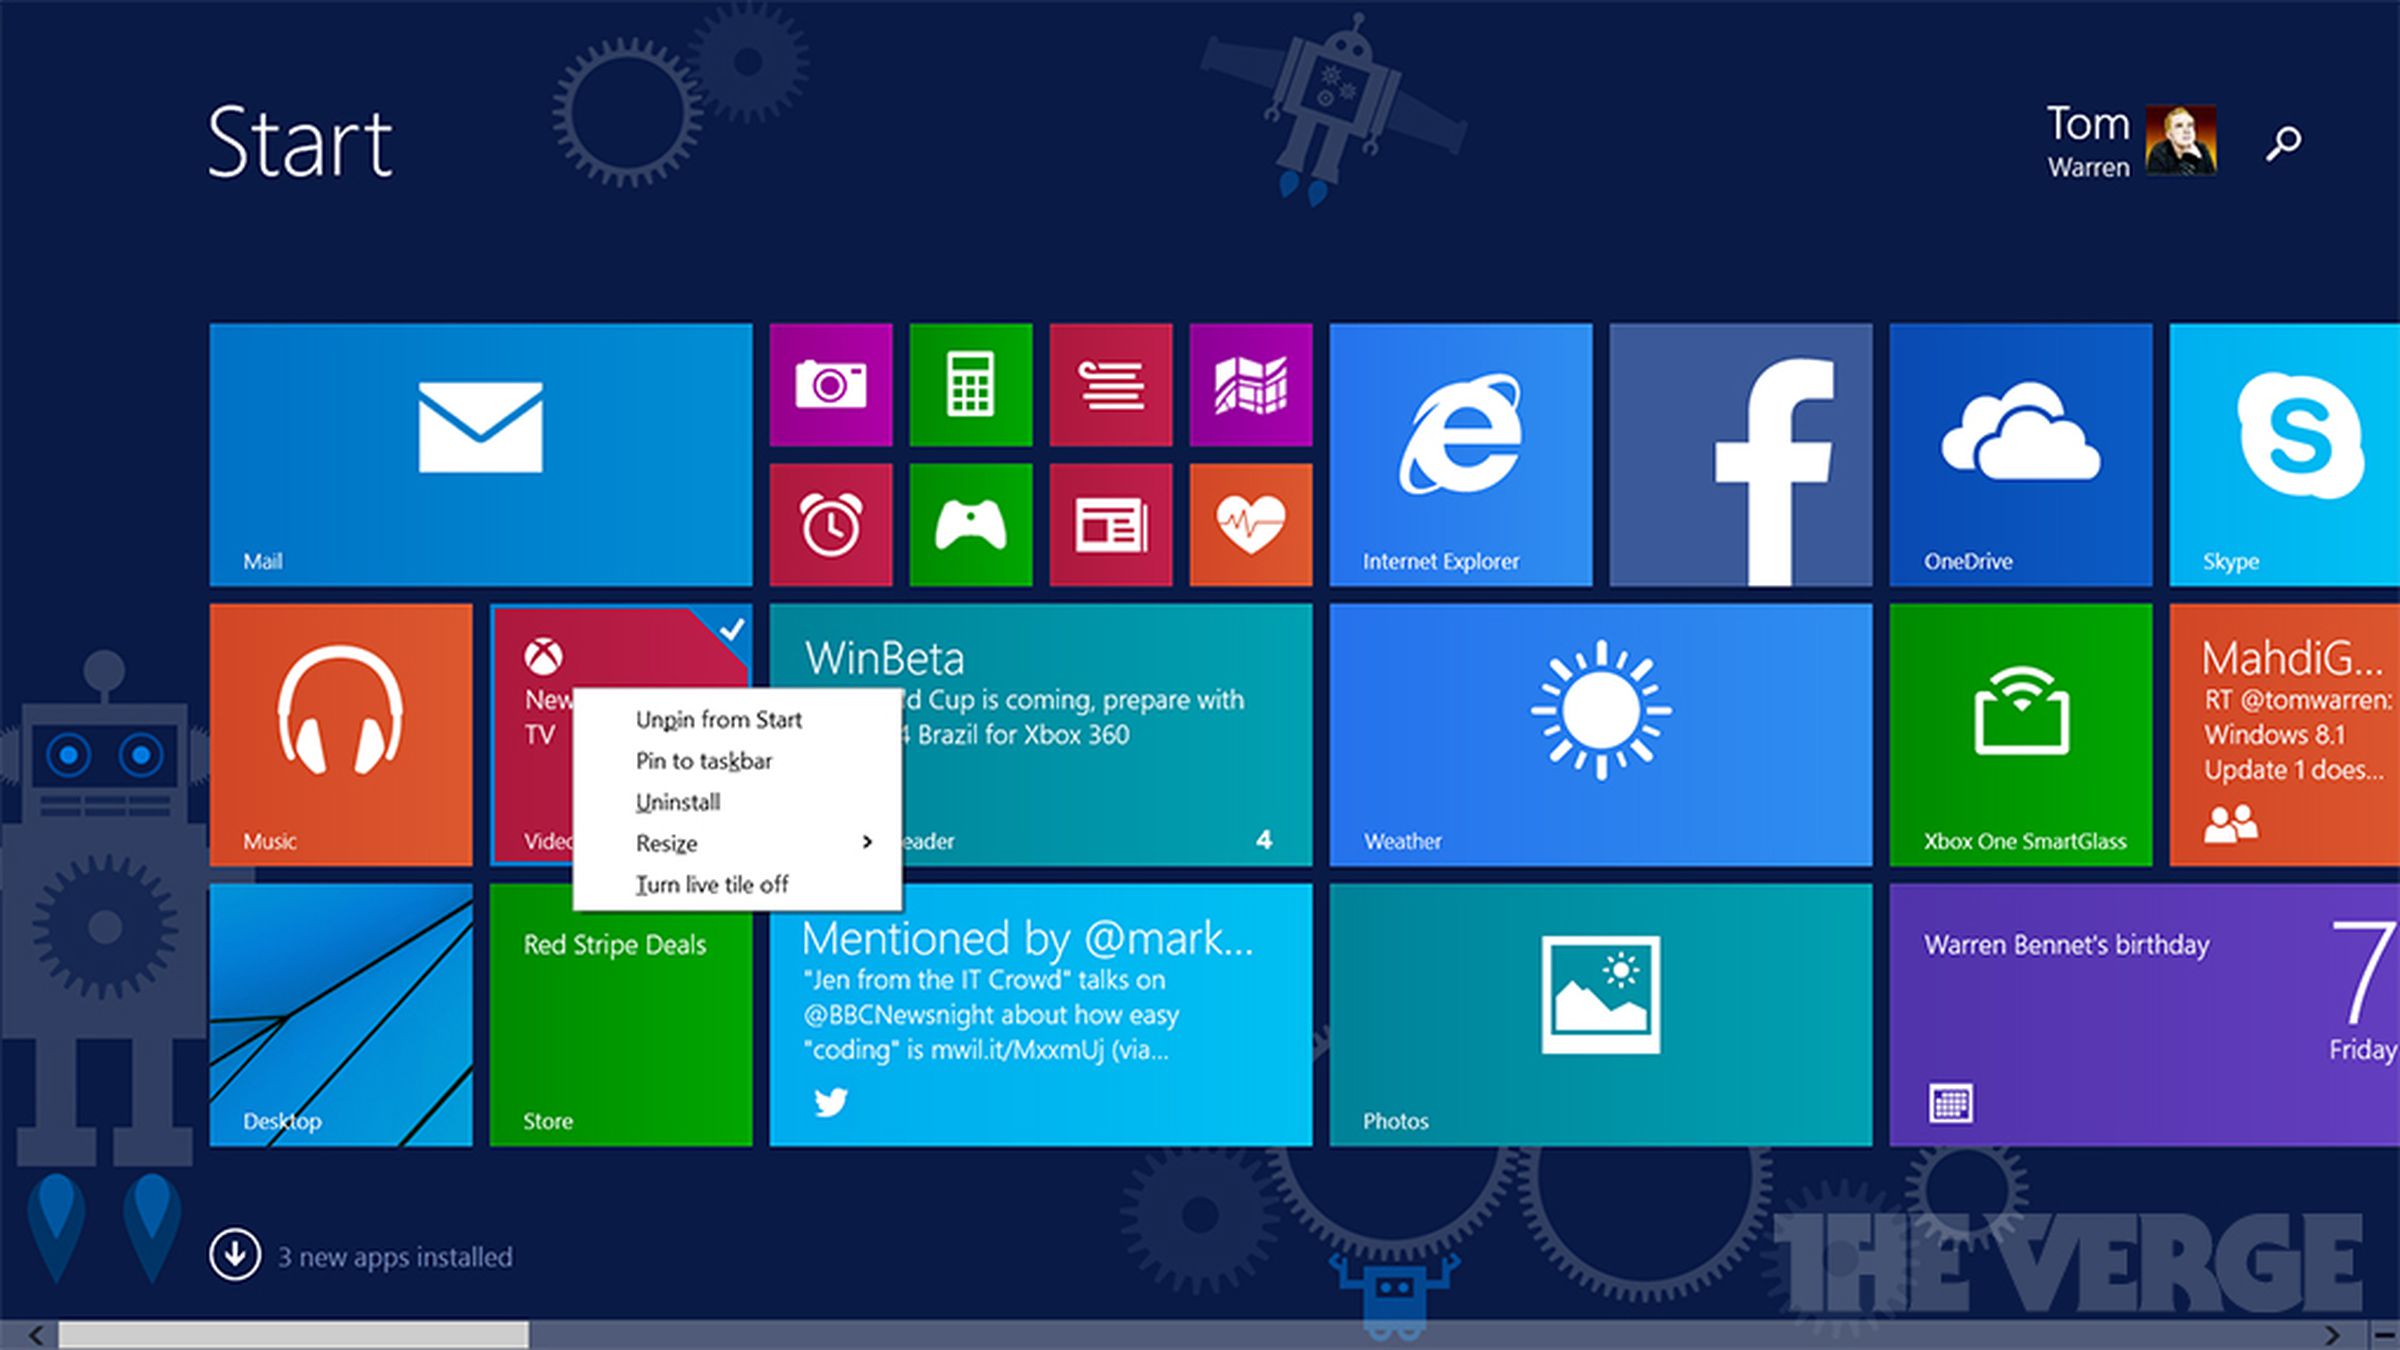 Windows 8.1 Update  changes